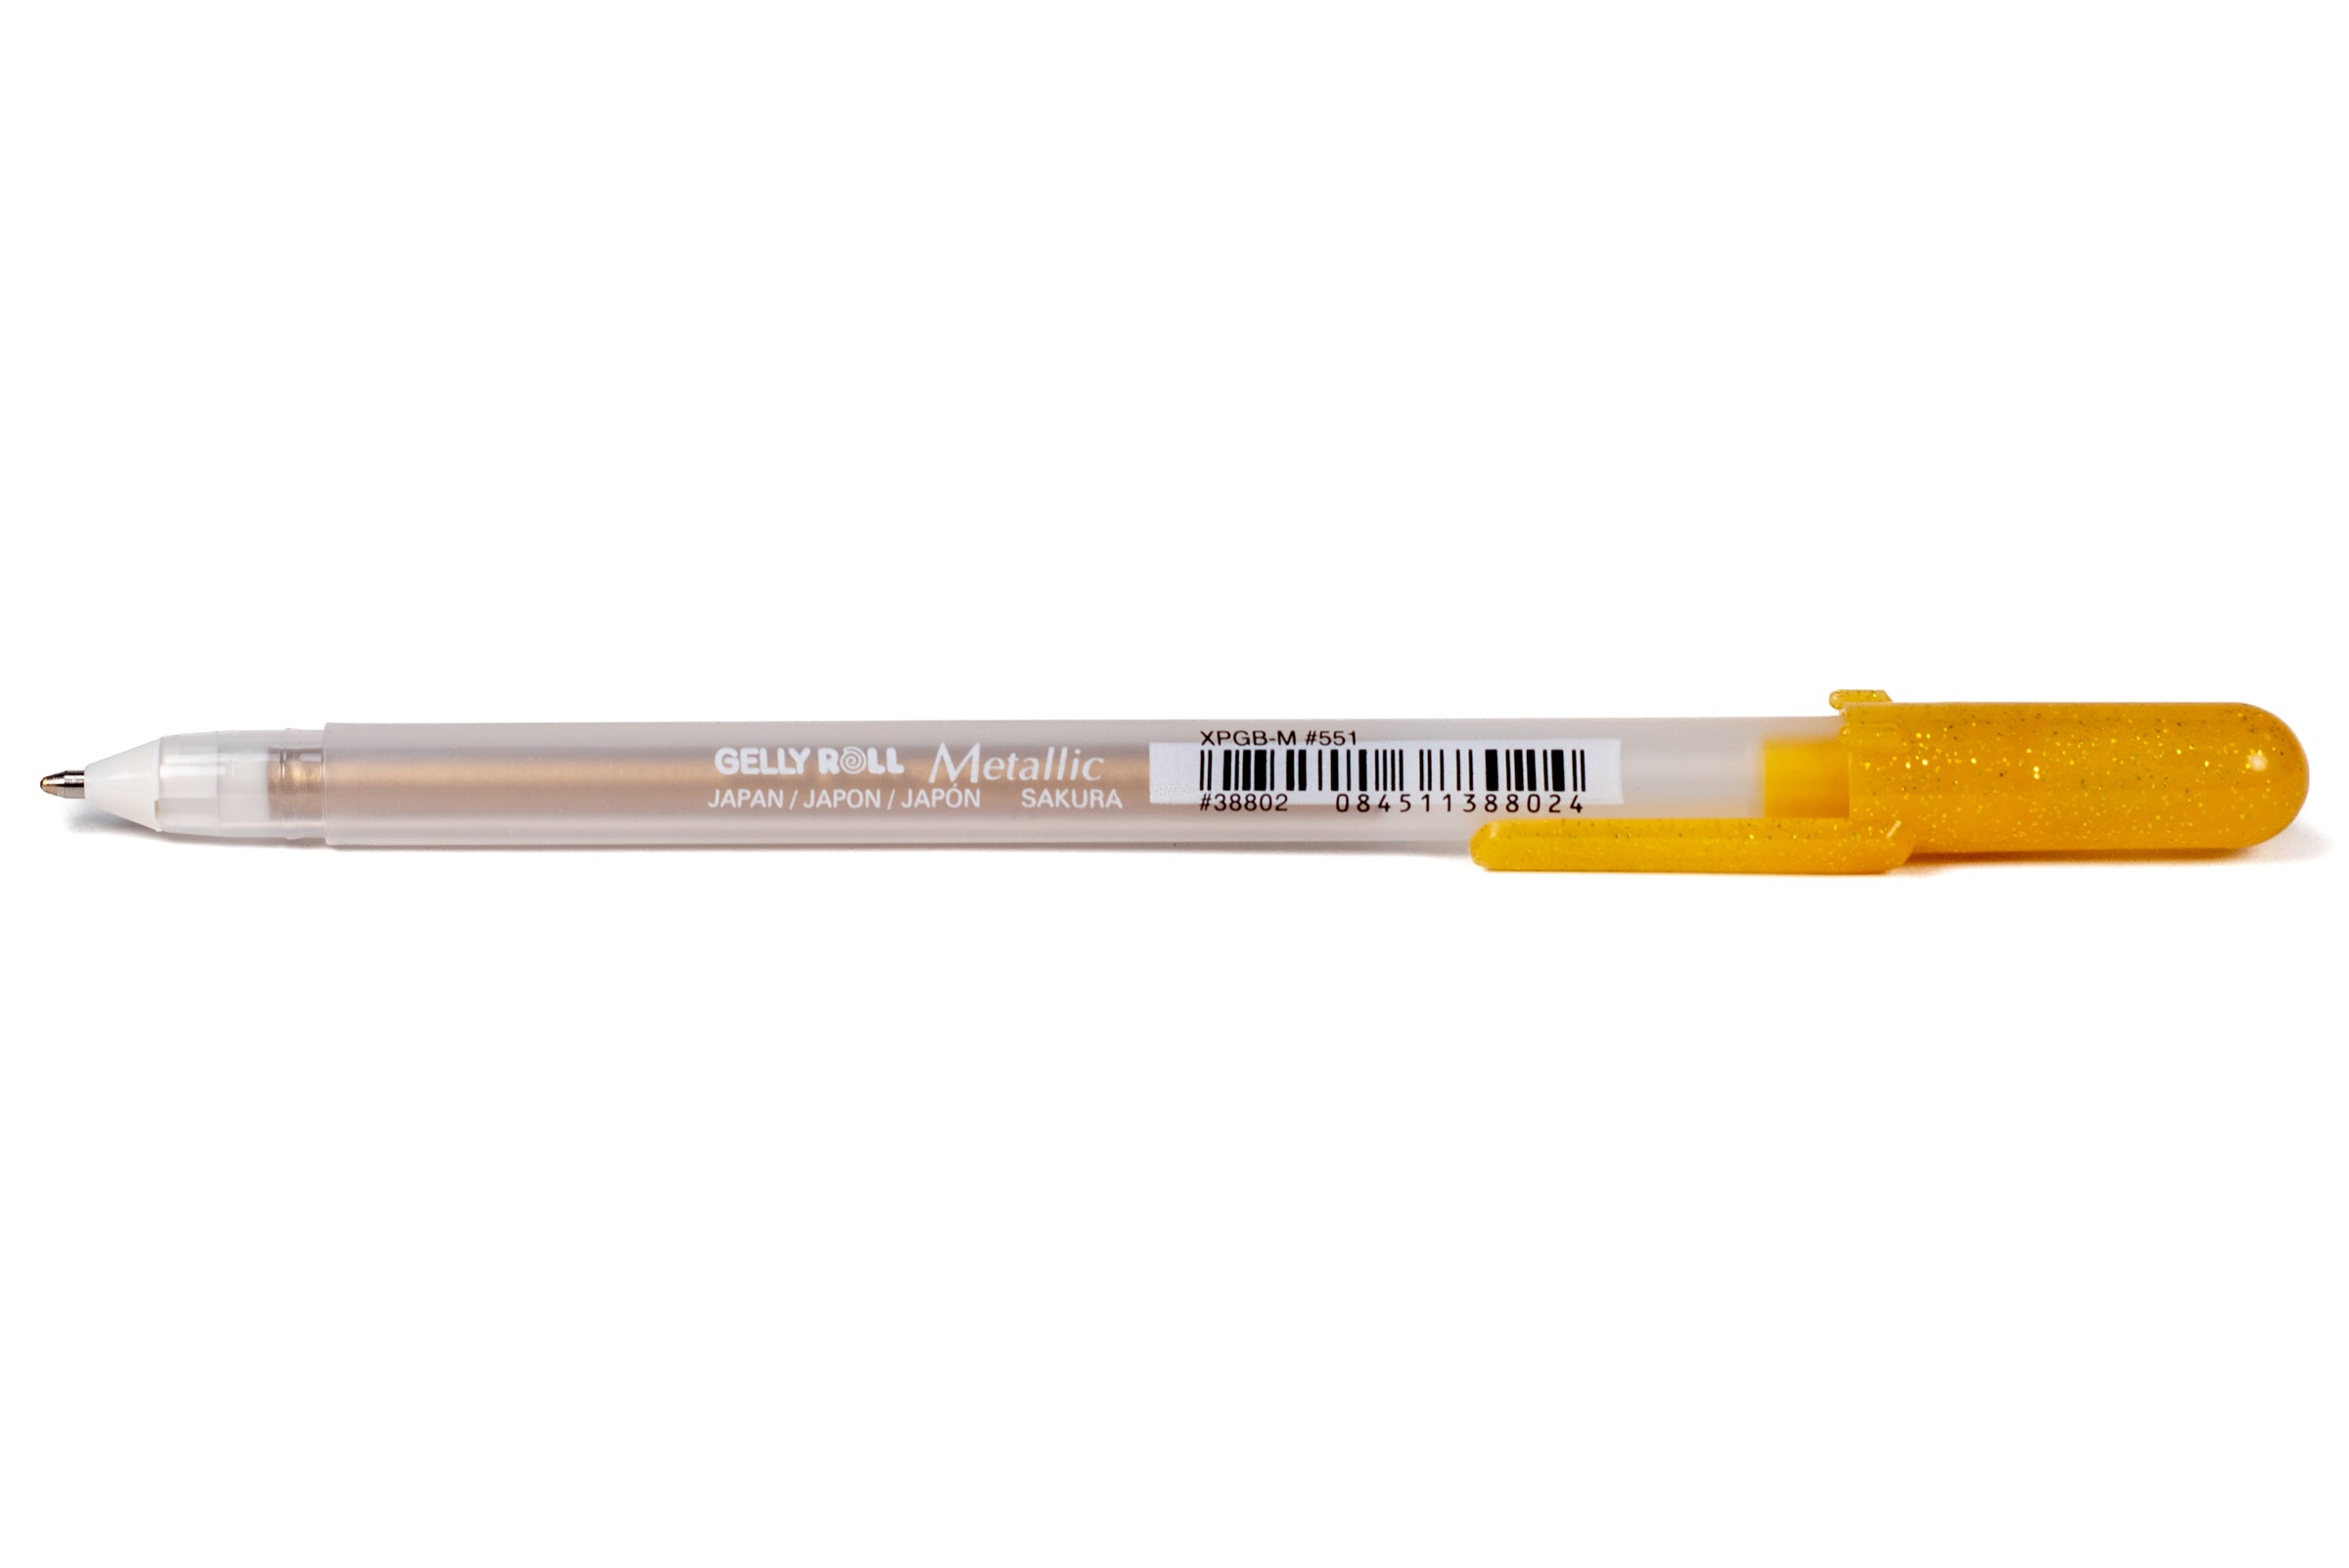 Sakura Gold Gelly Roll Pen - Metallic